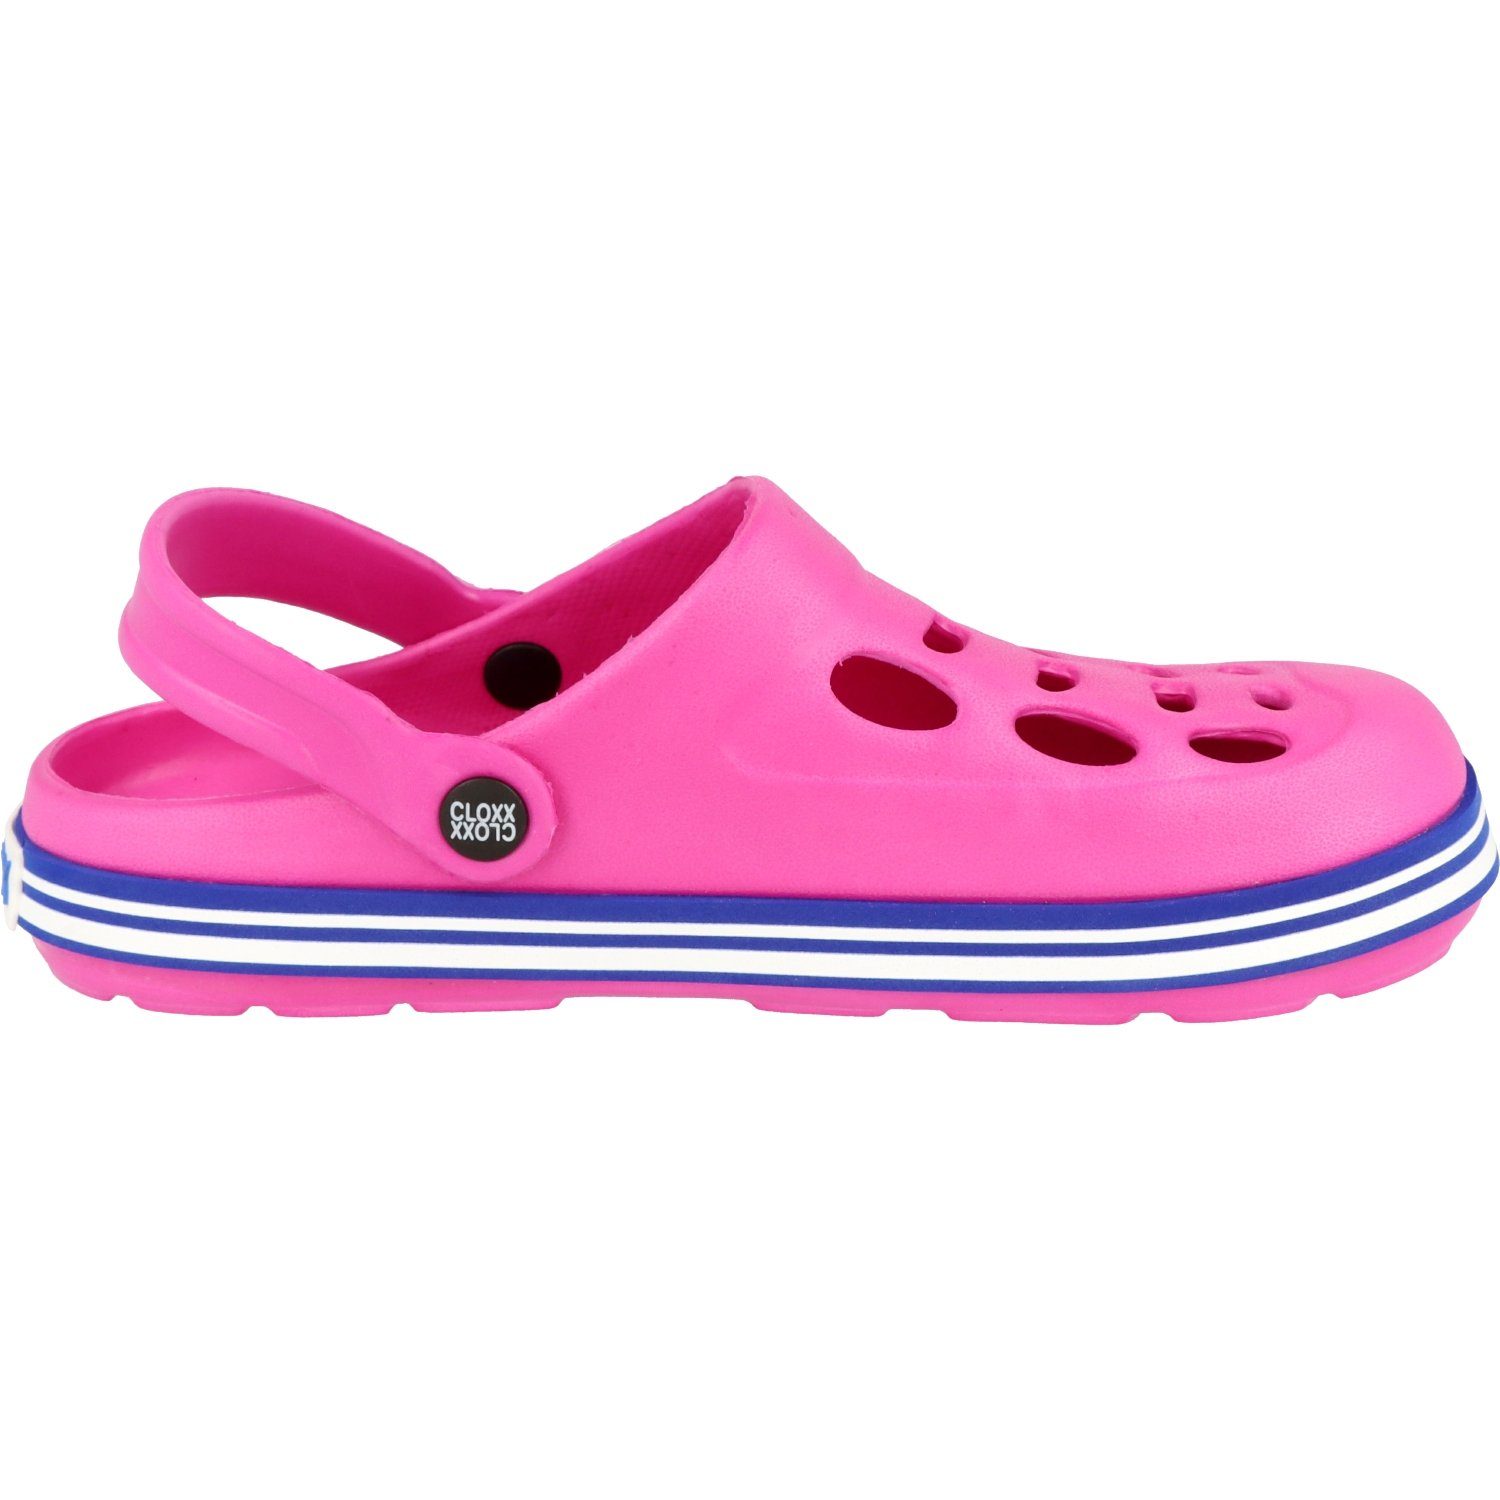 Damen/Mädchen Clogs R88410.33 Schuhe Clog Hausschuhe Pink Pantoletten Cloxx Gummi